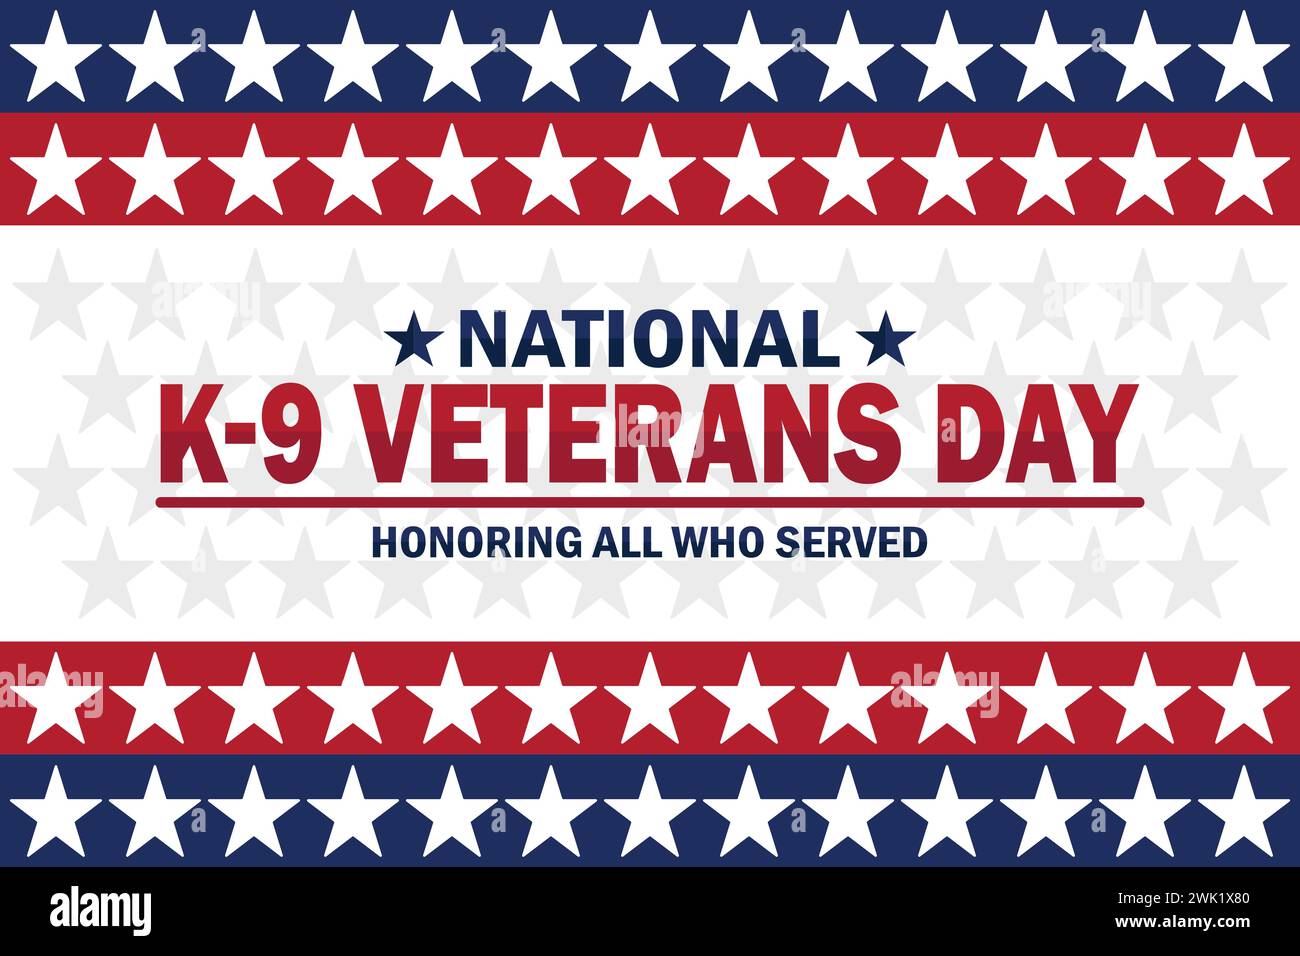 National K 9 Veterans Day fond d'écran moderne avec étoiles et typographie. Honorer tous ceux qui ont servi. Journée nationale des anciens combattants K 9, contexte Illustration de Vecteur